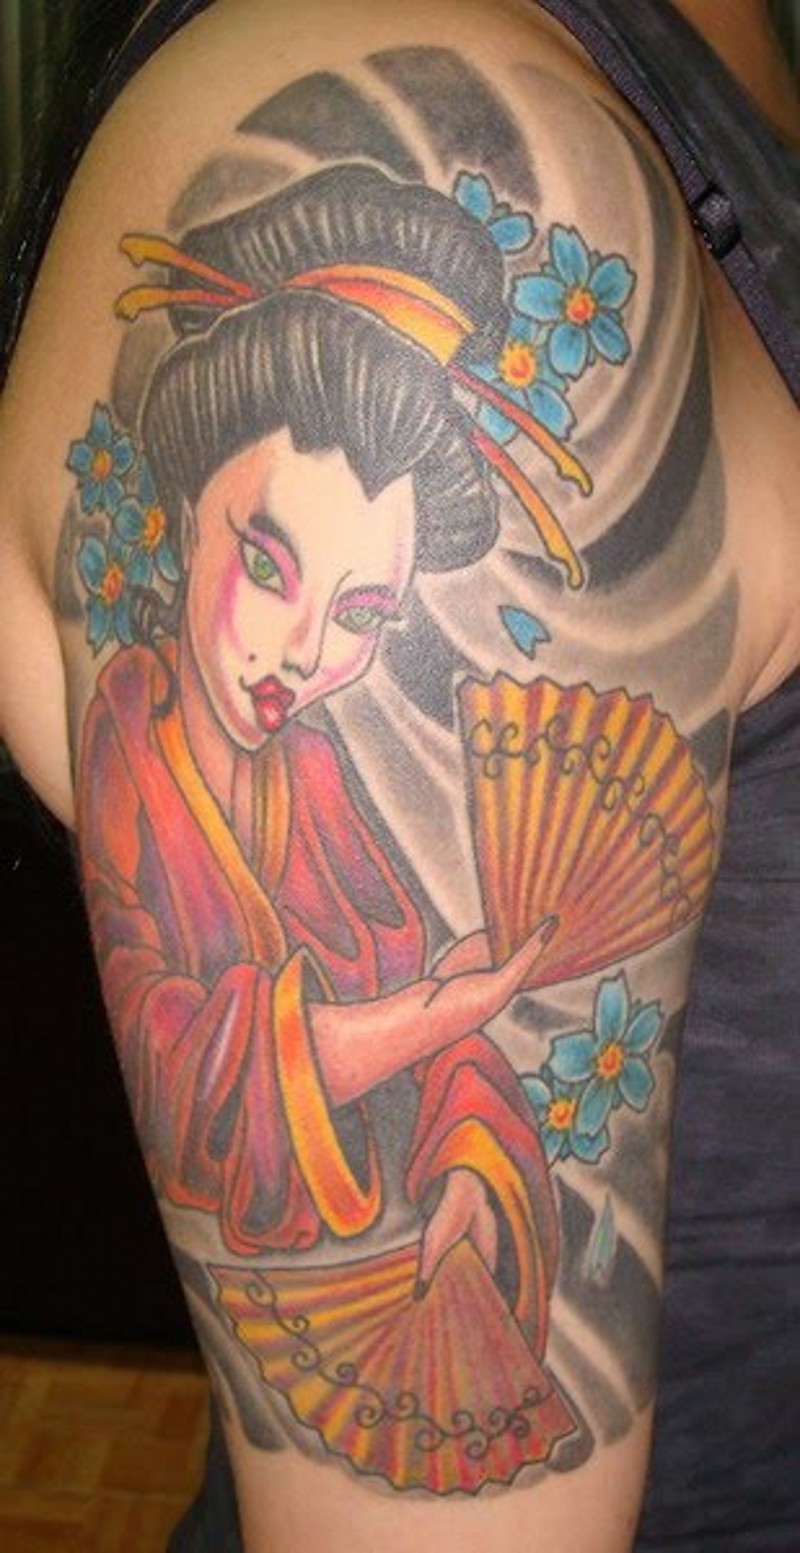 大臂卡通风格的亚洲艺妓花朵和扇子纹身图案